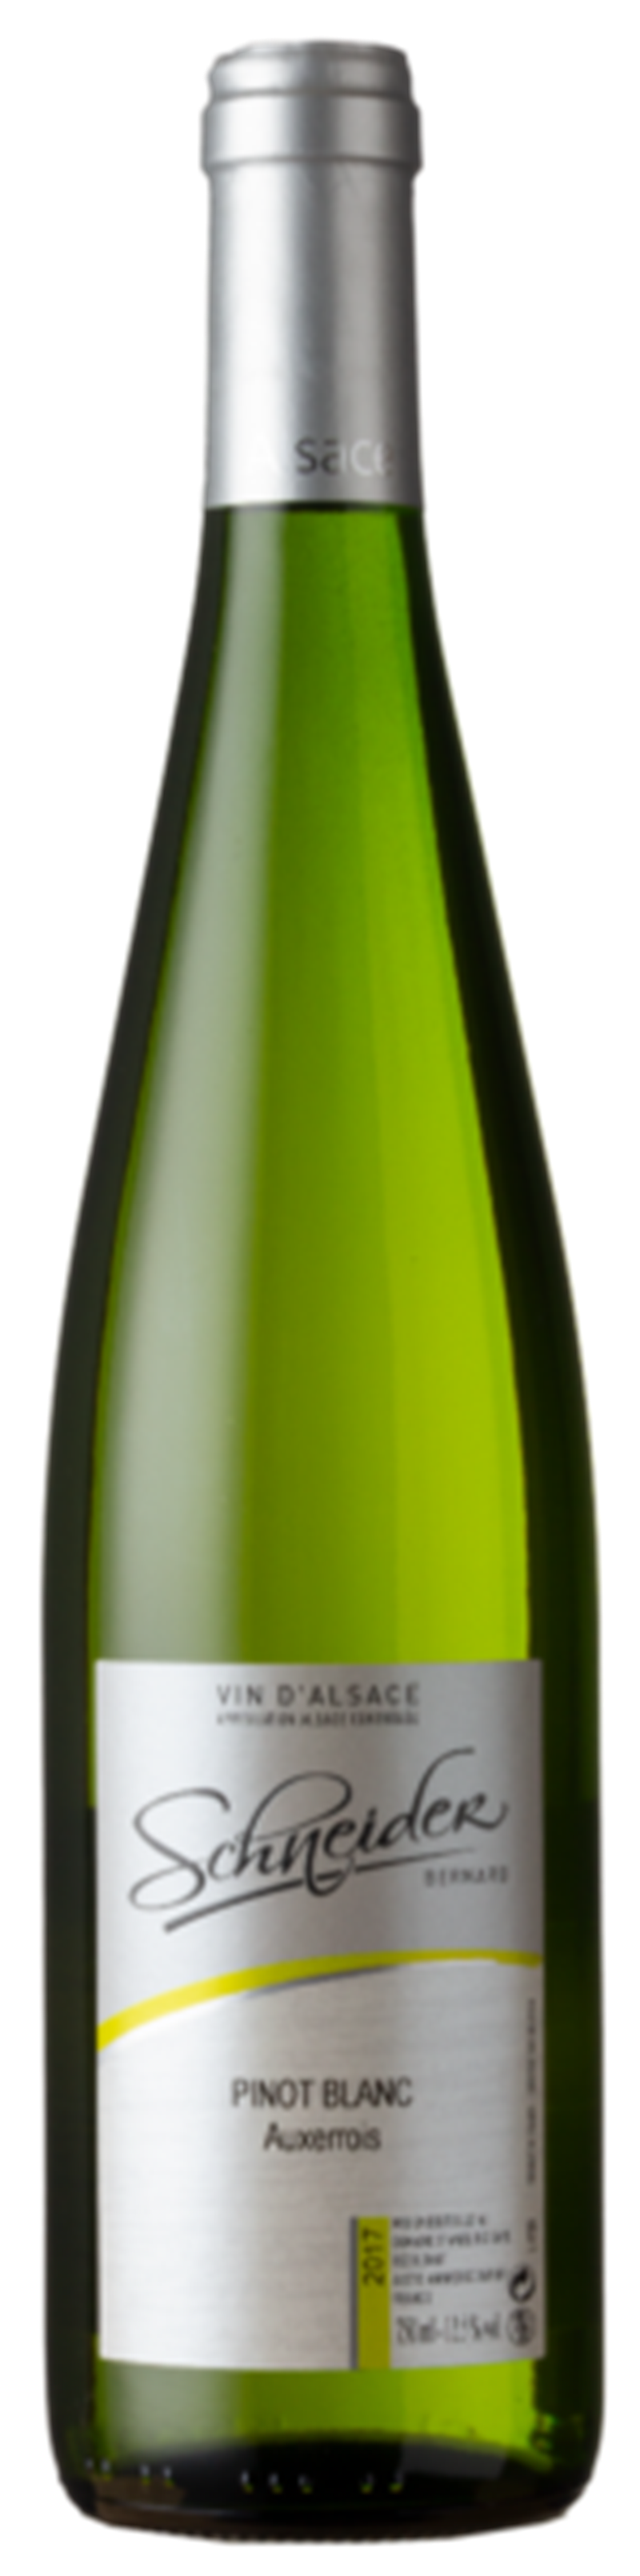 Domaine Bernard Schneider Pinot Blanc